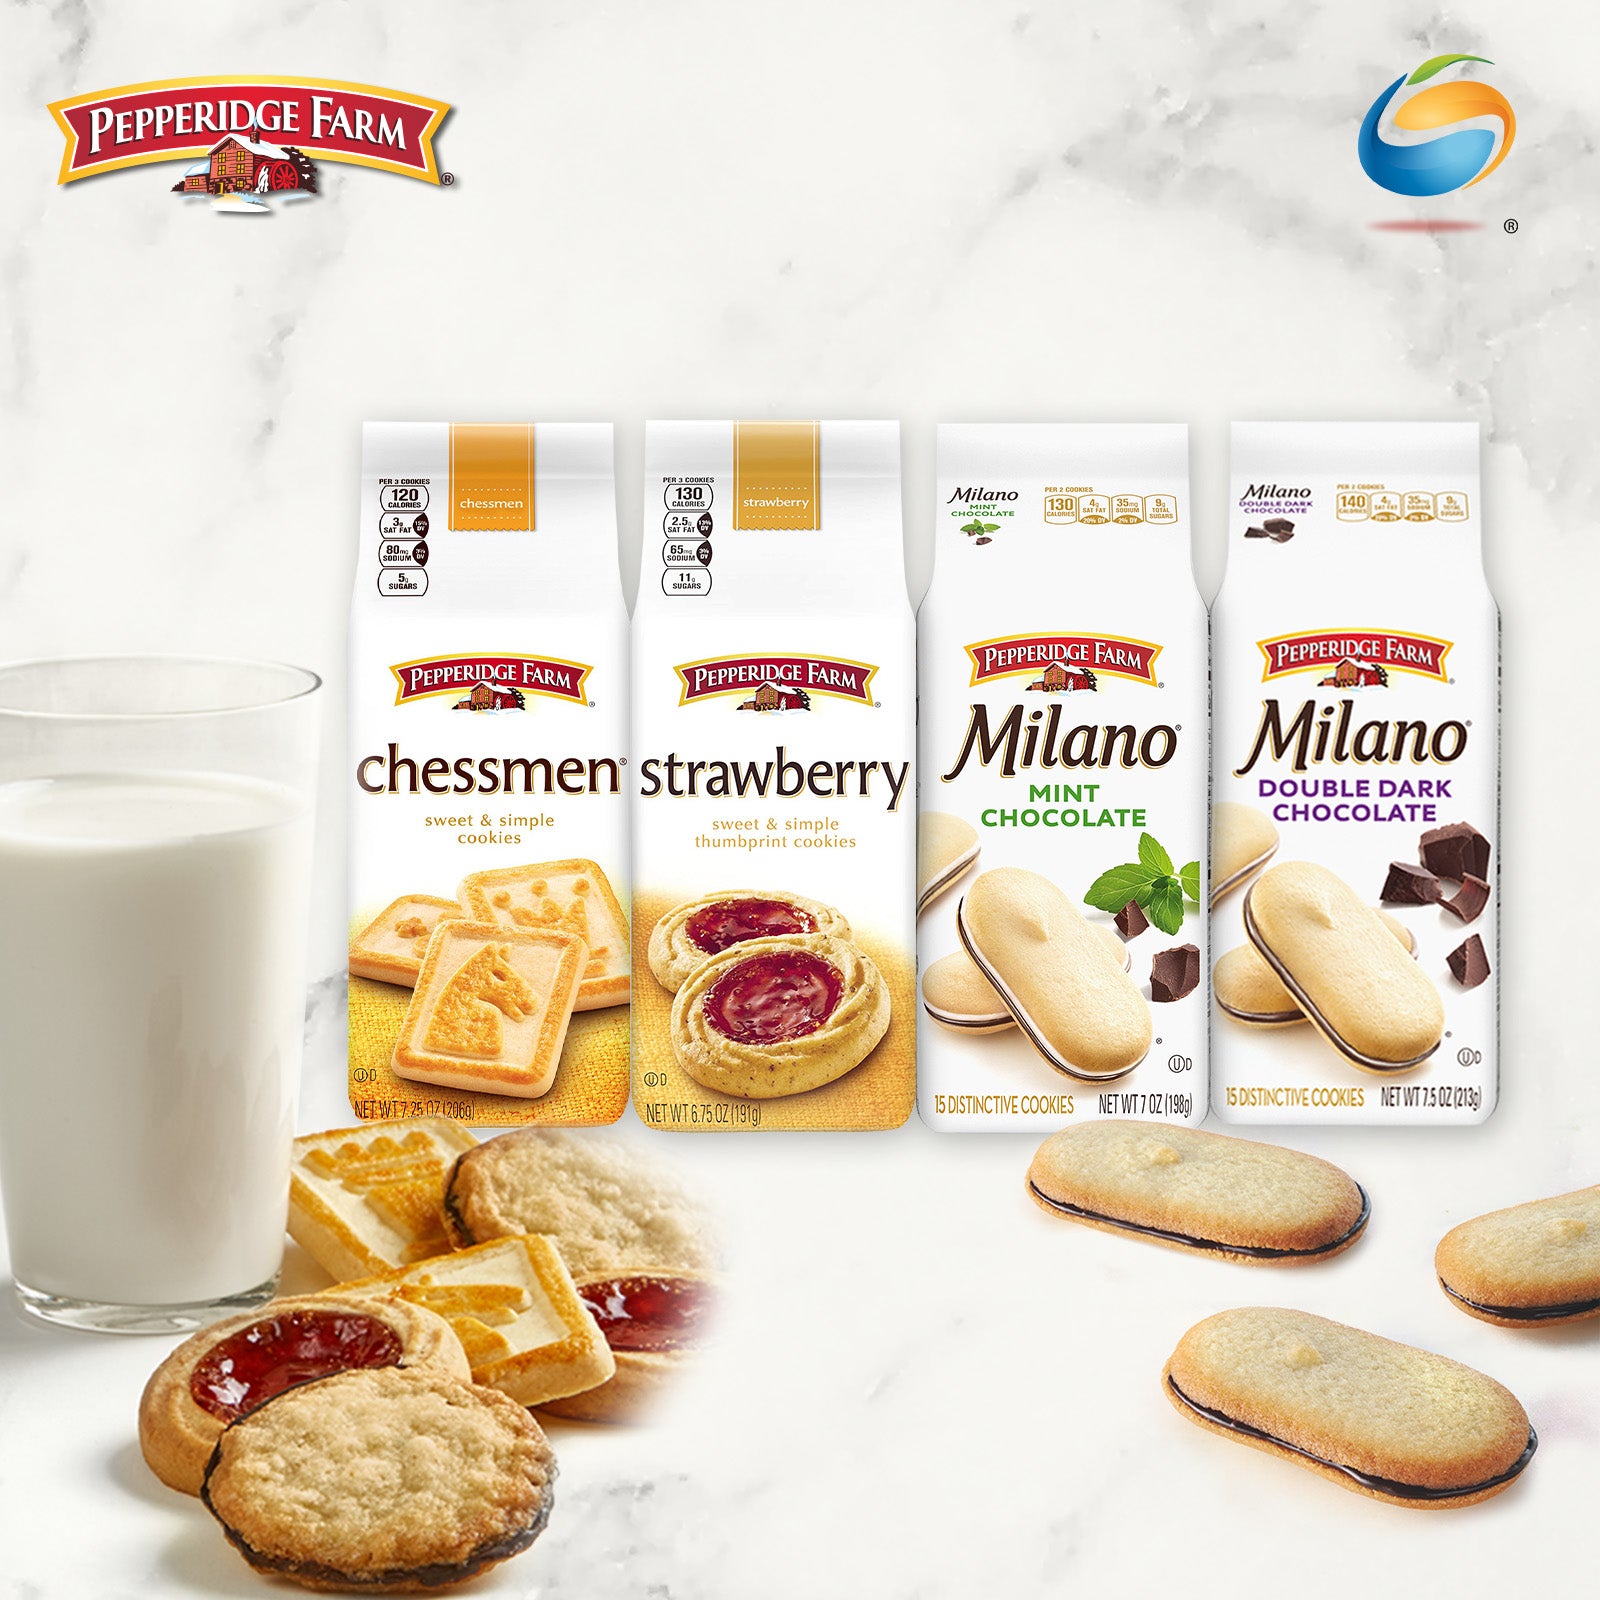 PEPPERIDGE FARM® Milano® & Distinctive Cookies